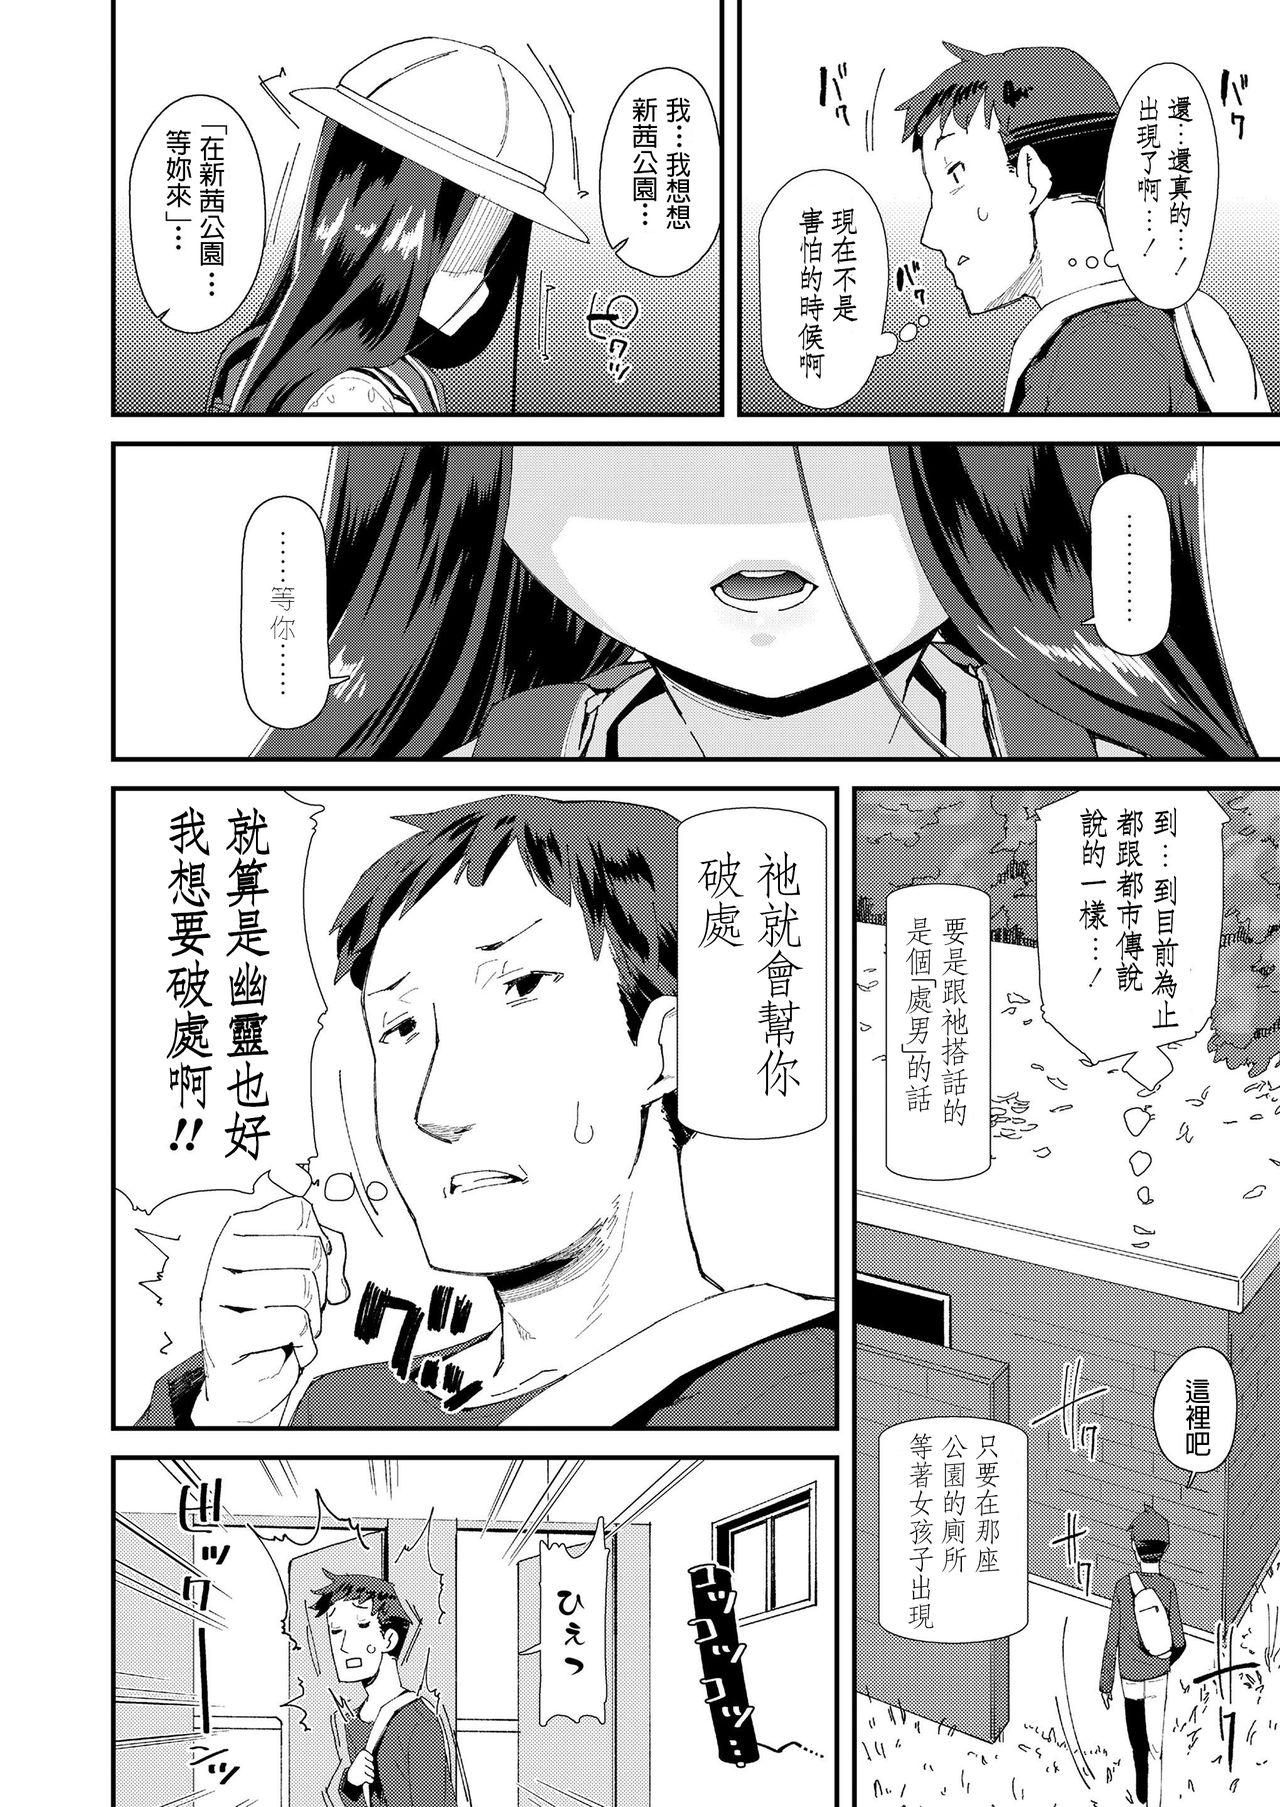 Mamada Toile no Yomi-chan Gaysex - Page 2